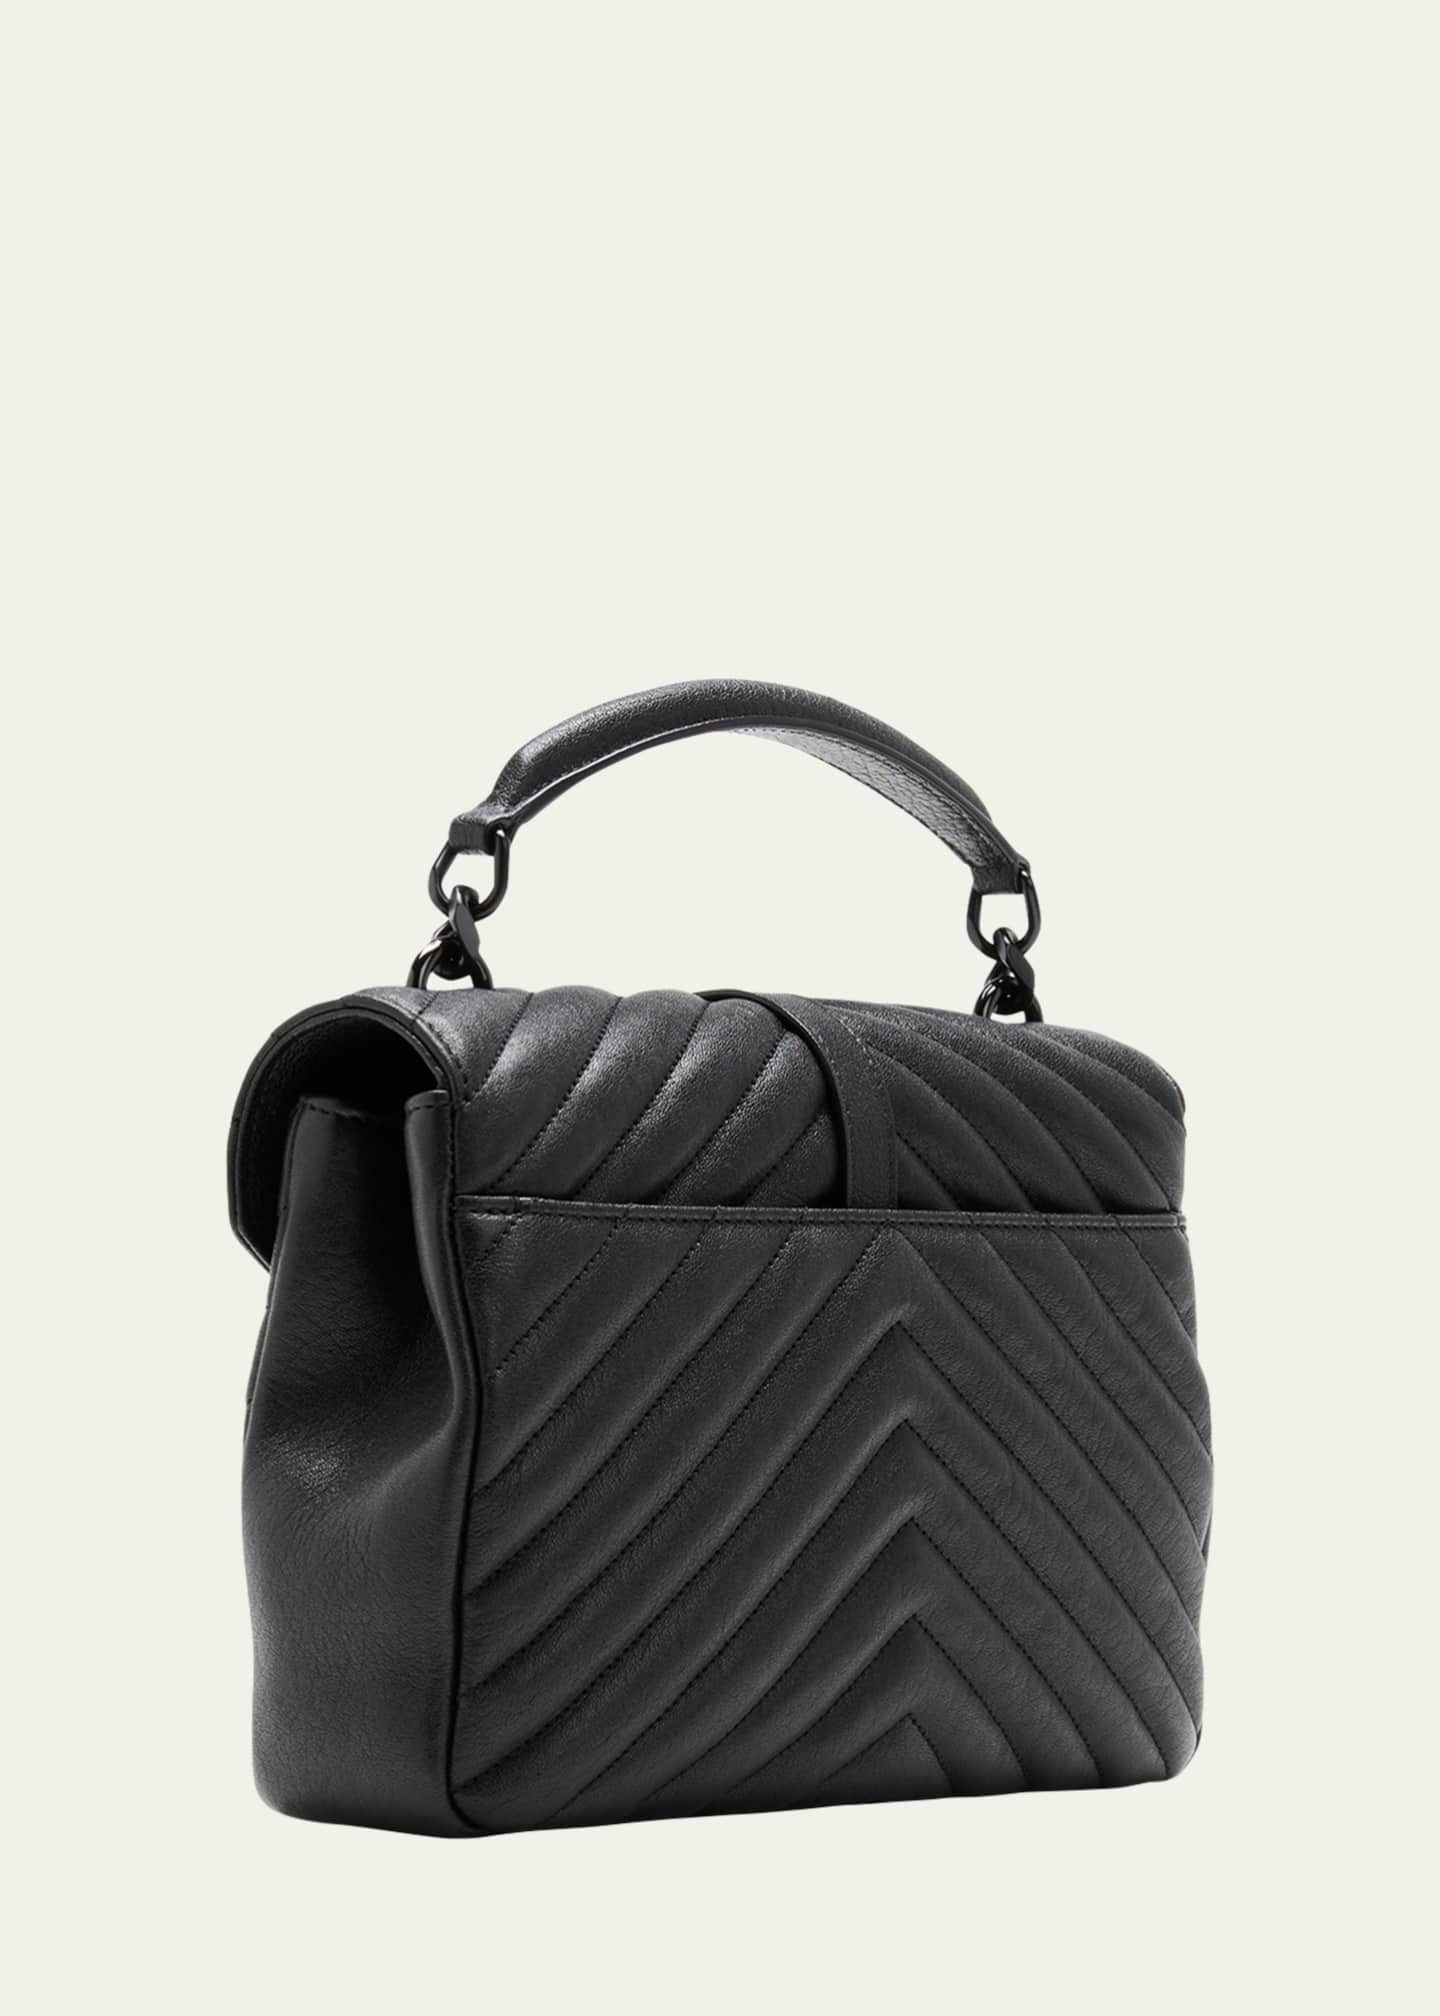 SAINT LAURENT PARIS Le Monogram buckle messenger bag Size Medium  PVC/Leather